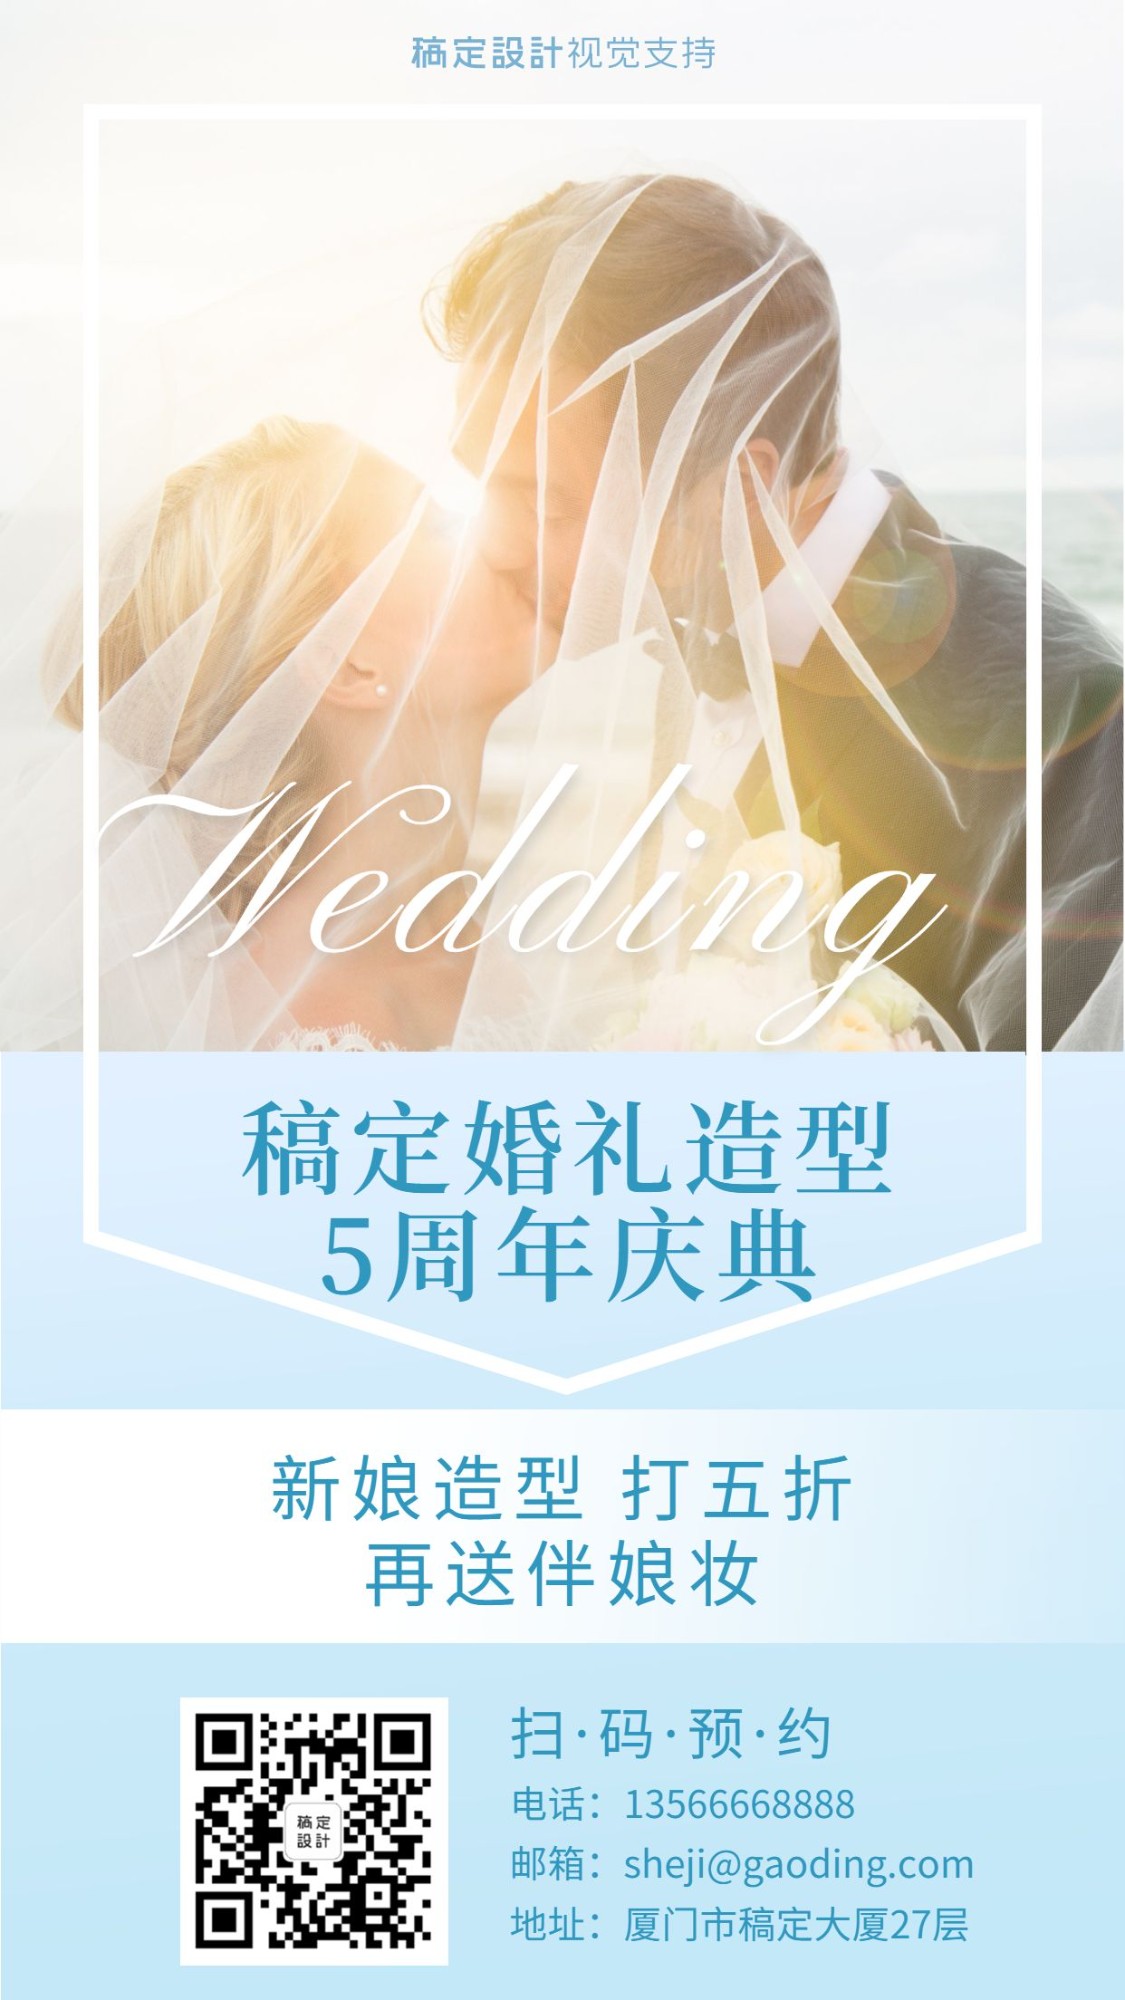 婚礼造型五周年庆典海报/婚礼跟妆案例展示